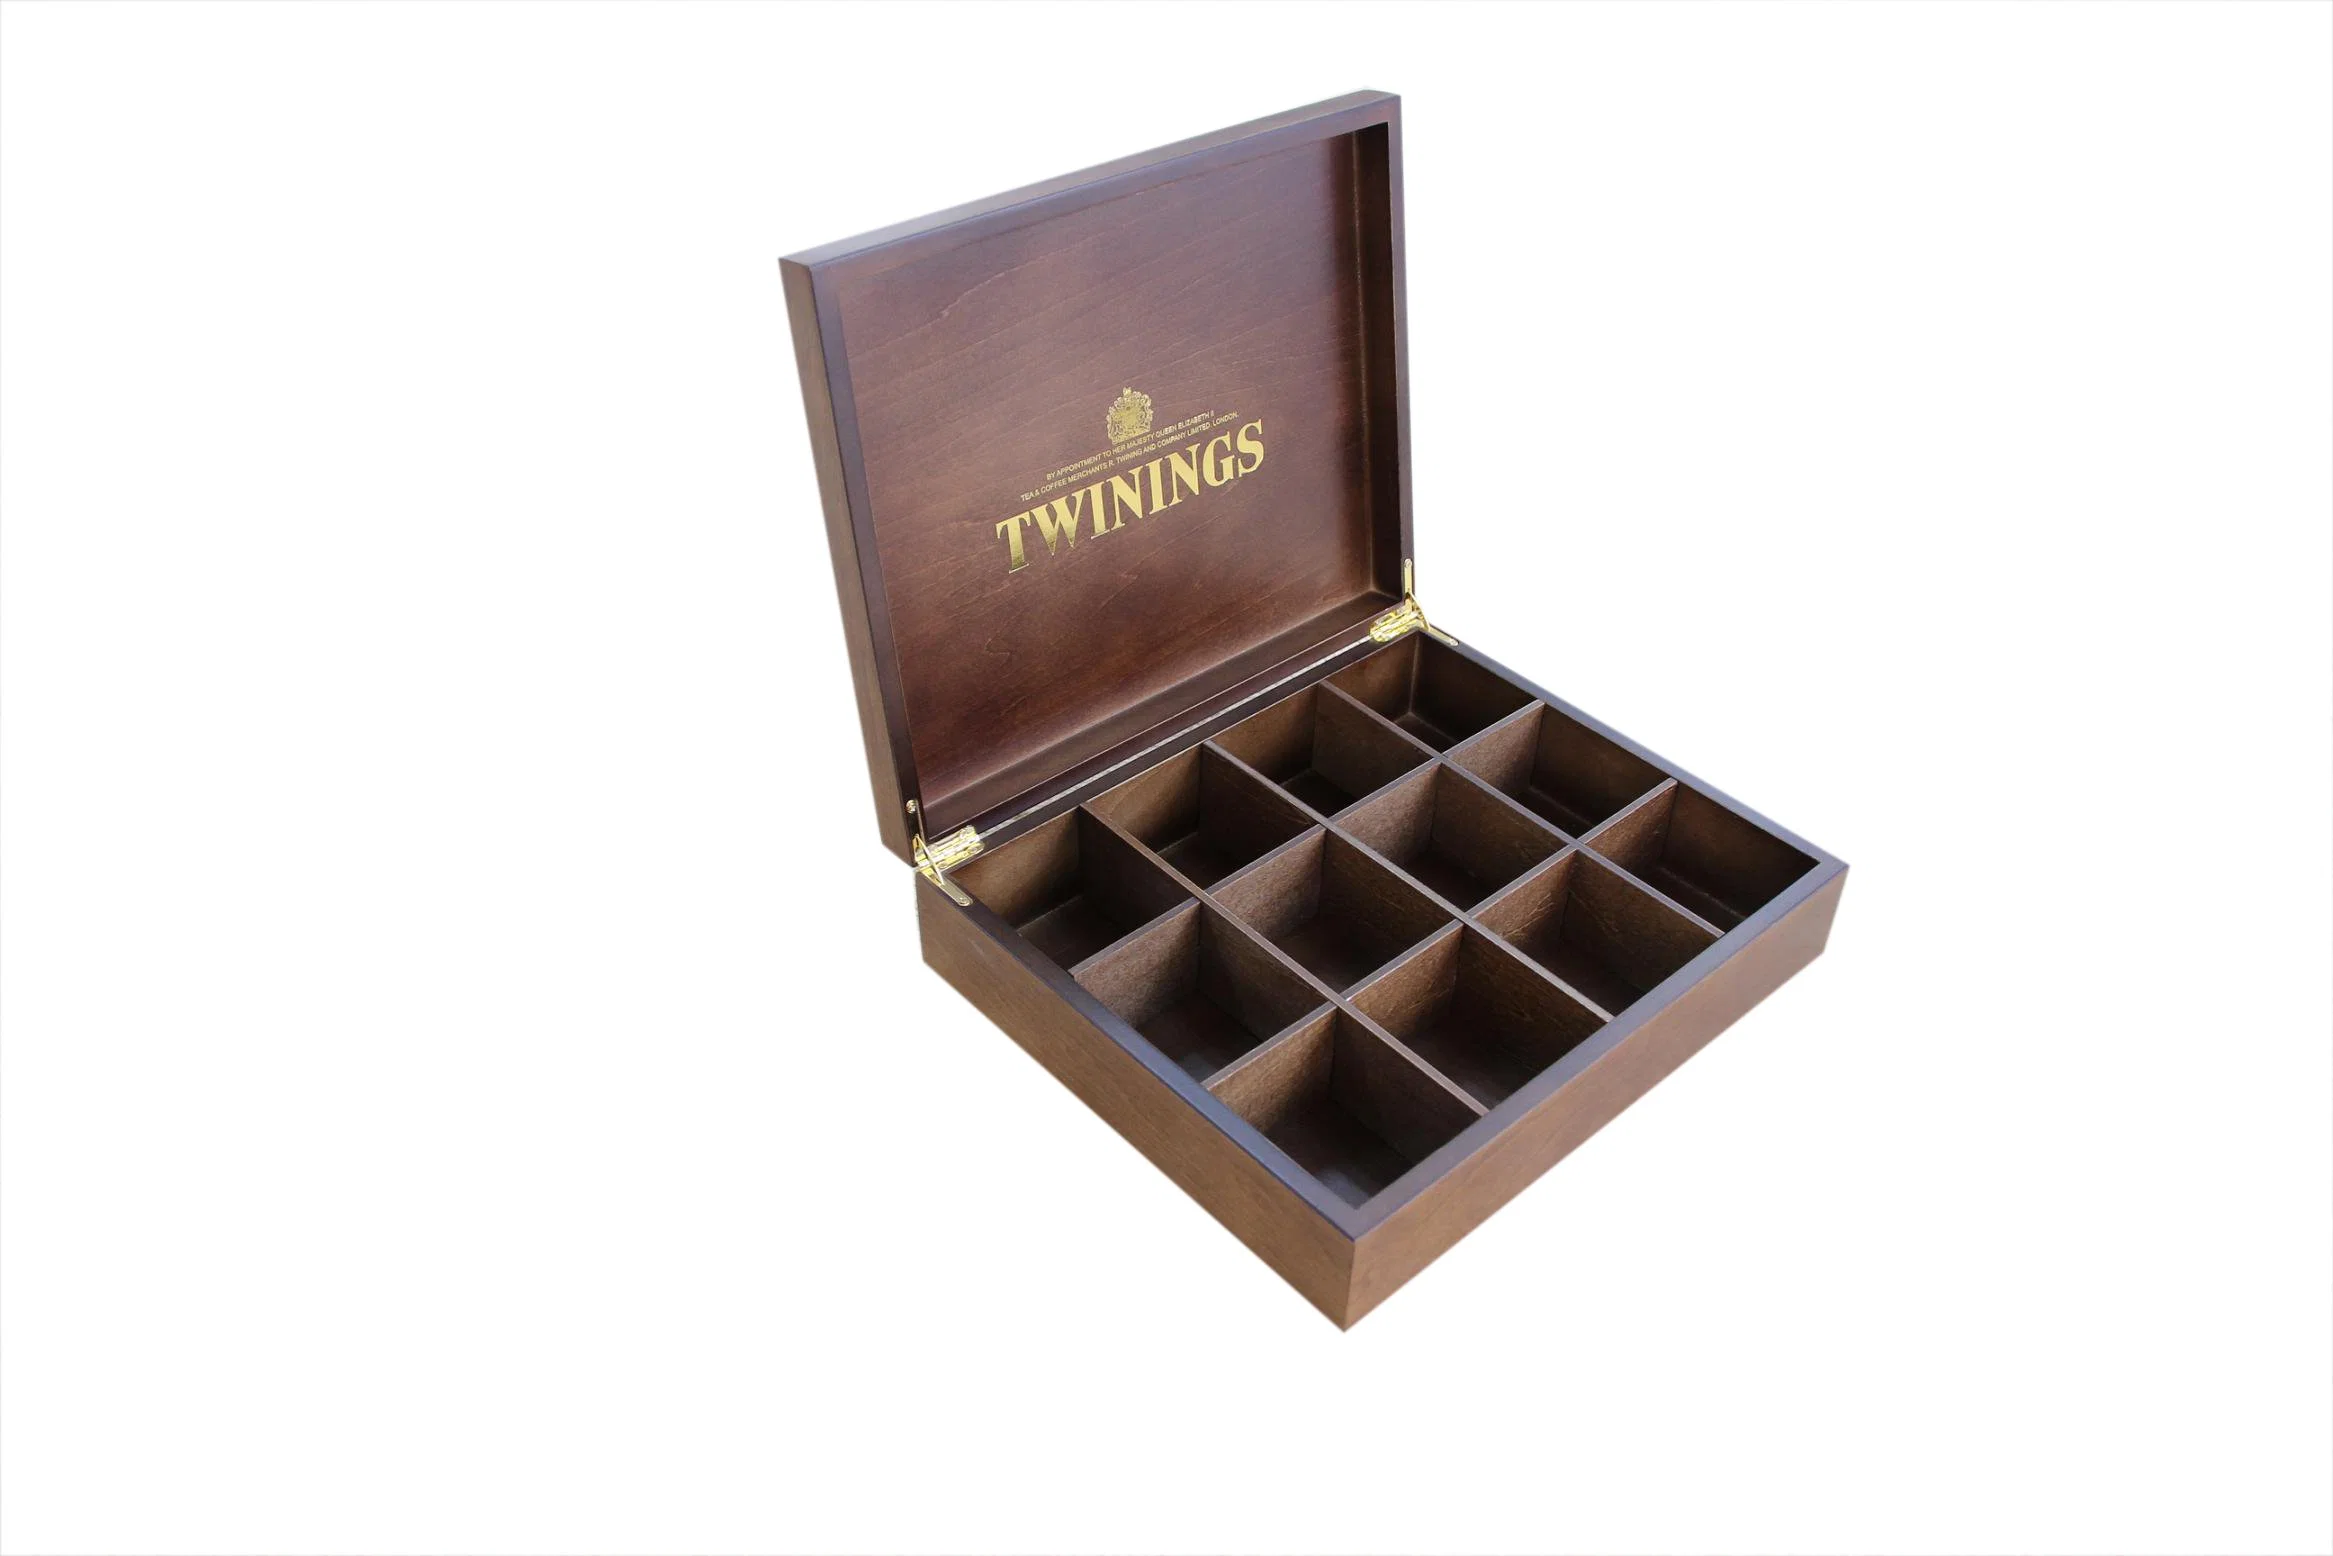 Hechos a mano en madera oscura regalo té Twinings caja de embalaje de madera, bolsitas de té Caja de almacenamiento y el organizador, el té de madera artesanal Don Packagin cuadros y el pecho